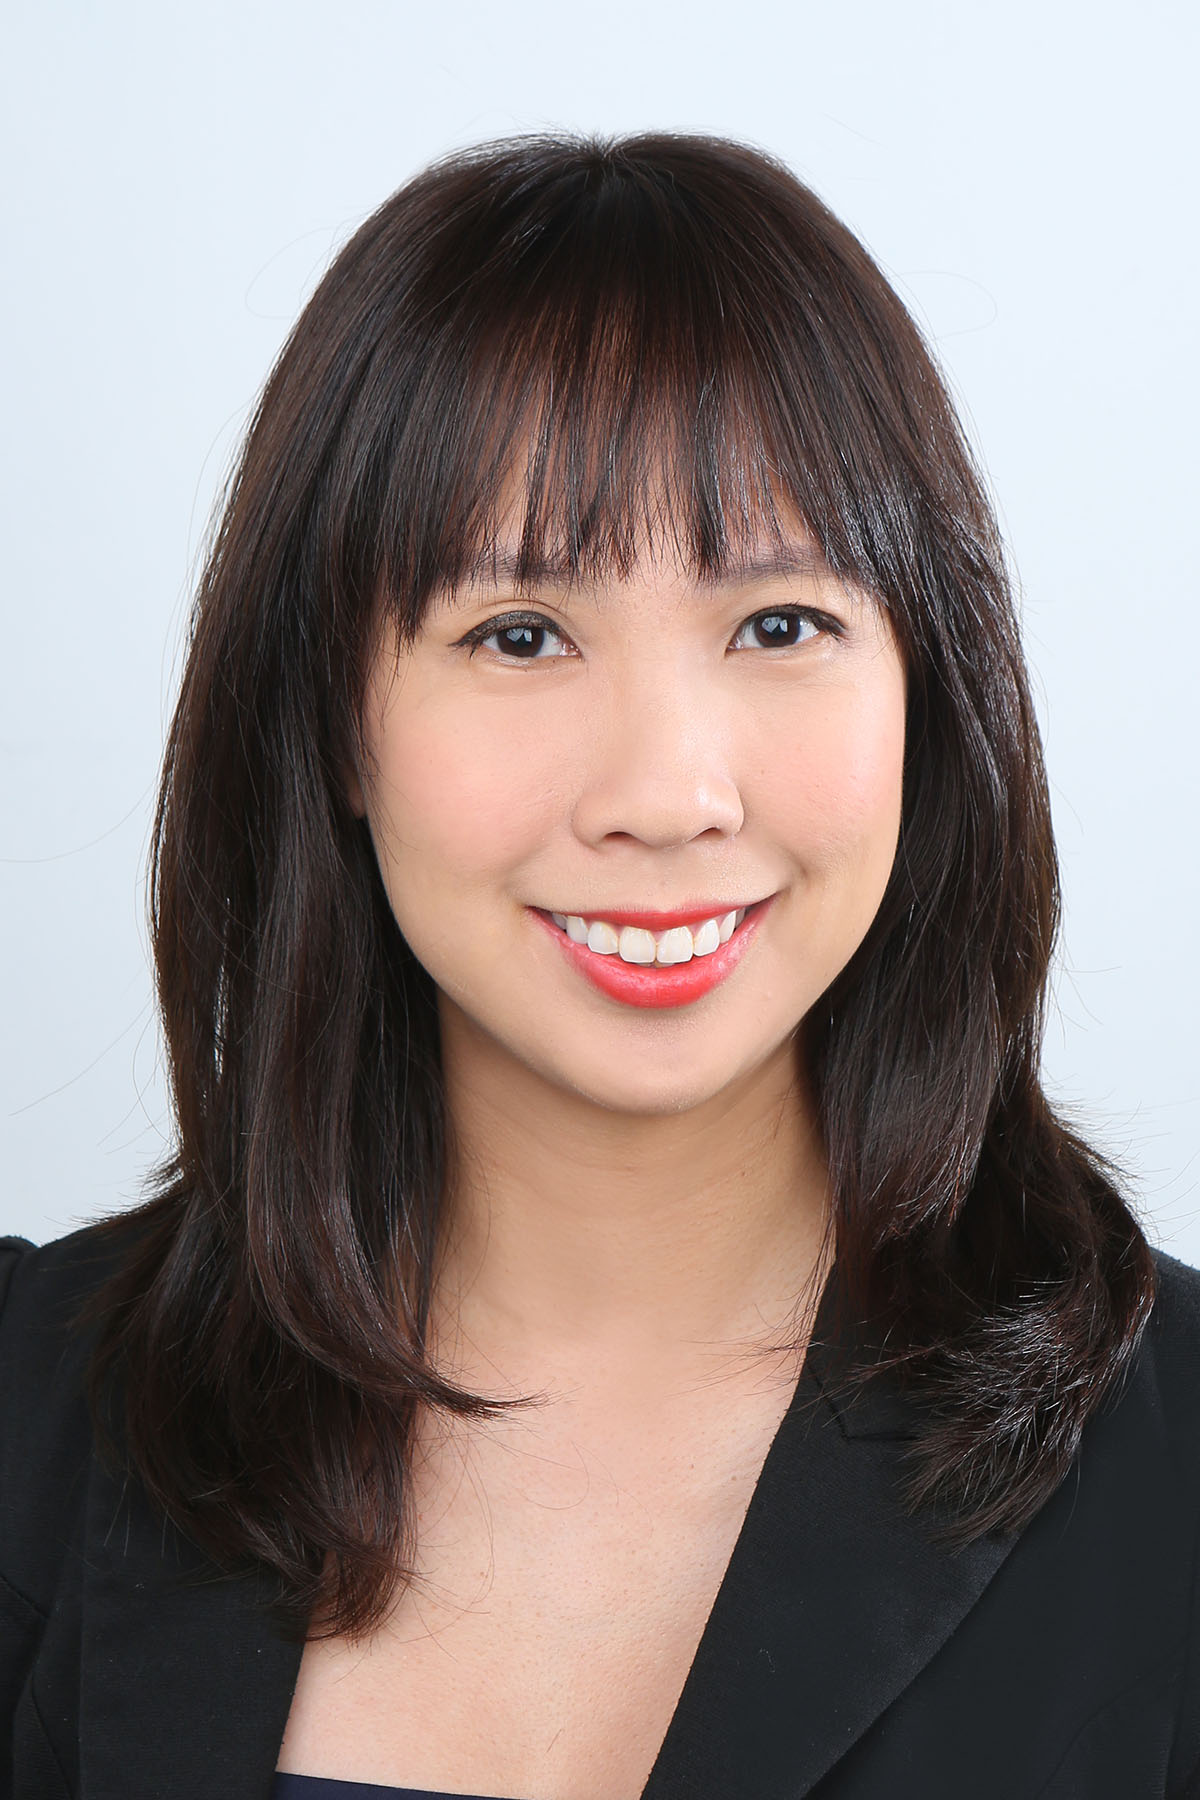 Senior ESG Analyst Serena Tan